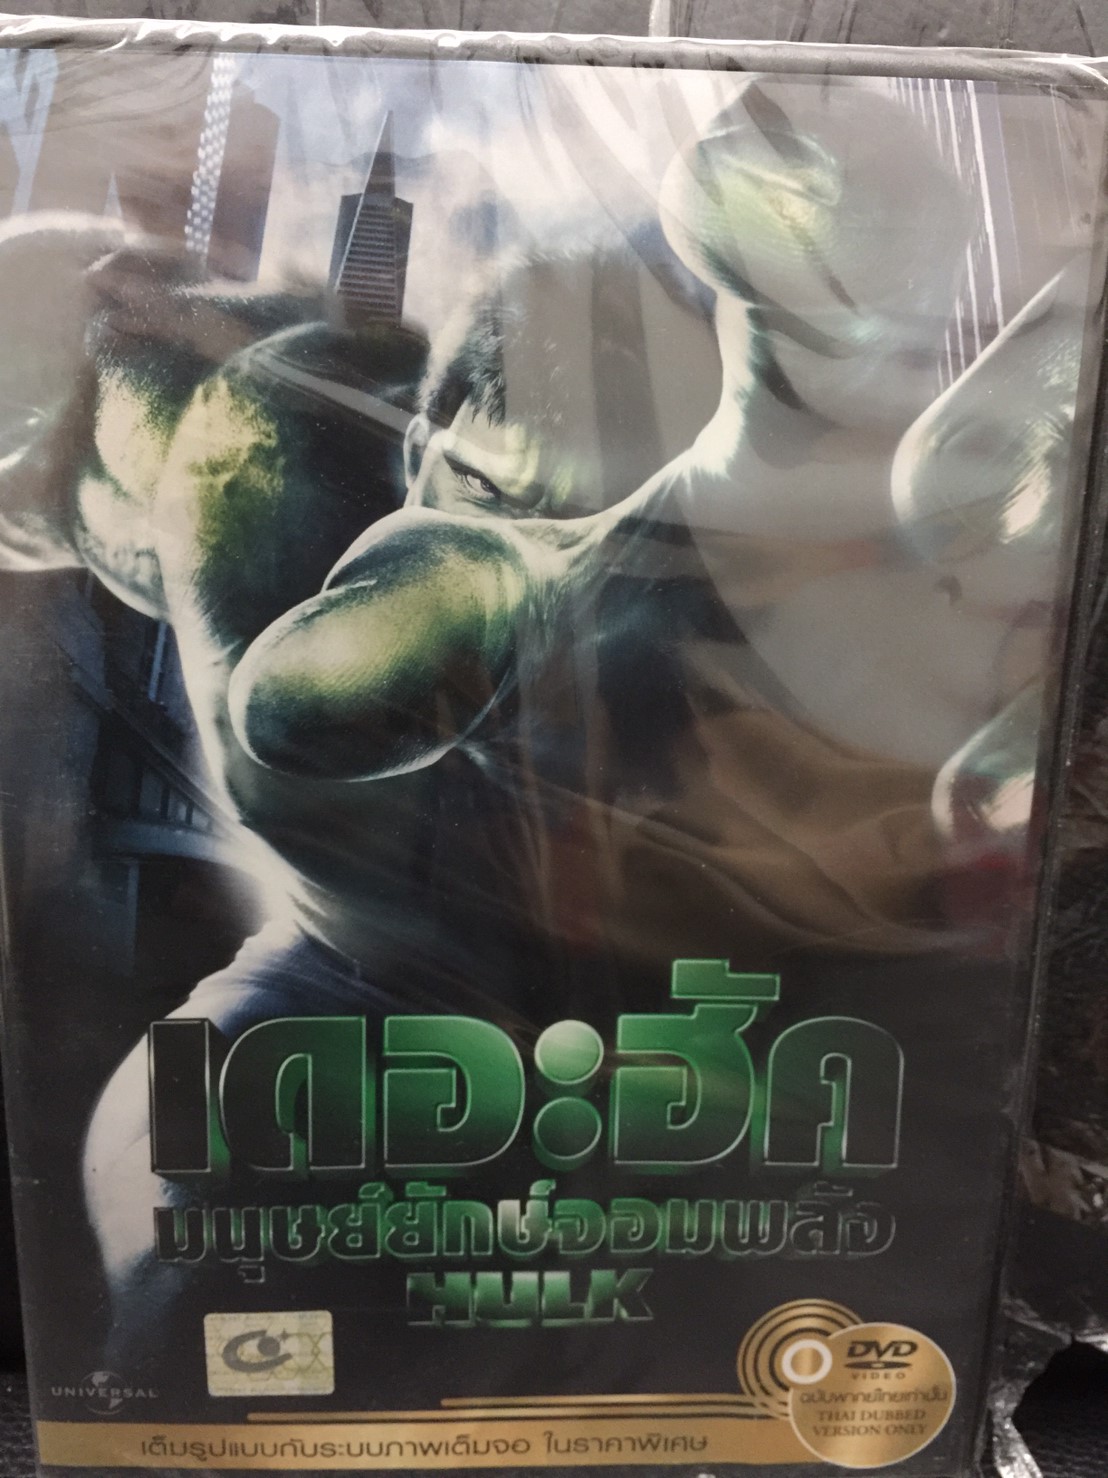 DVDหนัง เดอะฮัค มนุษย์ยักษ์จอมพลัง  (SBYDVDหนัง3399-เดอะฮัคมนุษย์ยักษ์จอมพลัง) พากย์ไทย เท่านั้น หนังเก่า หนัง ดูหนัง ดีวีดี DVD STARMART